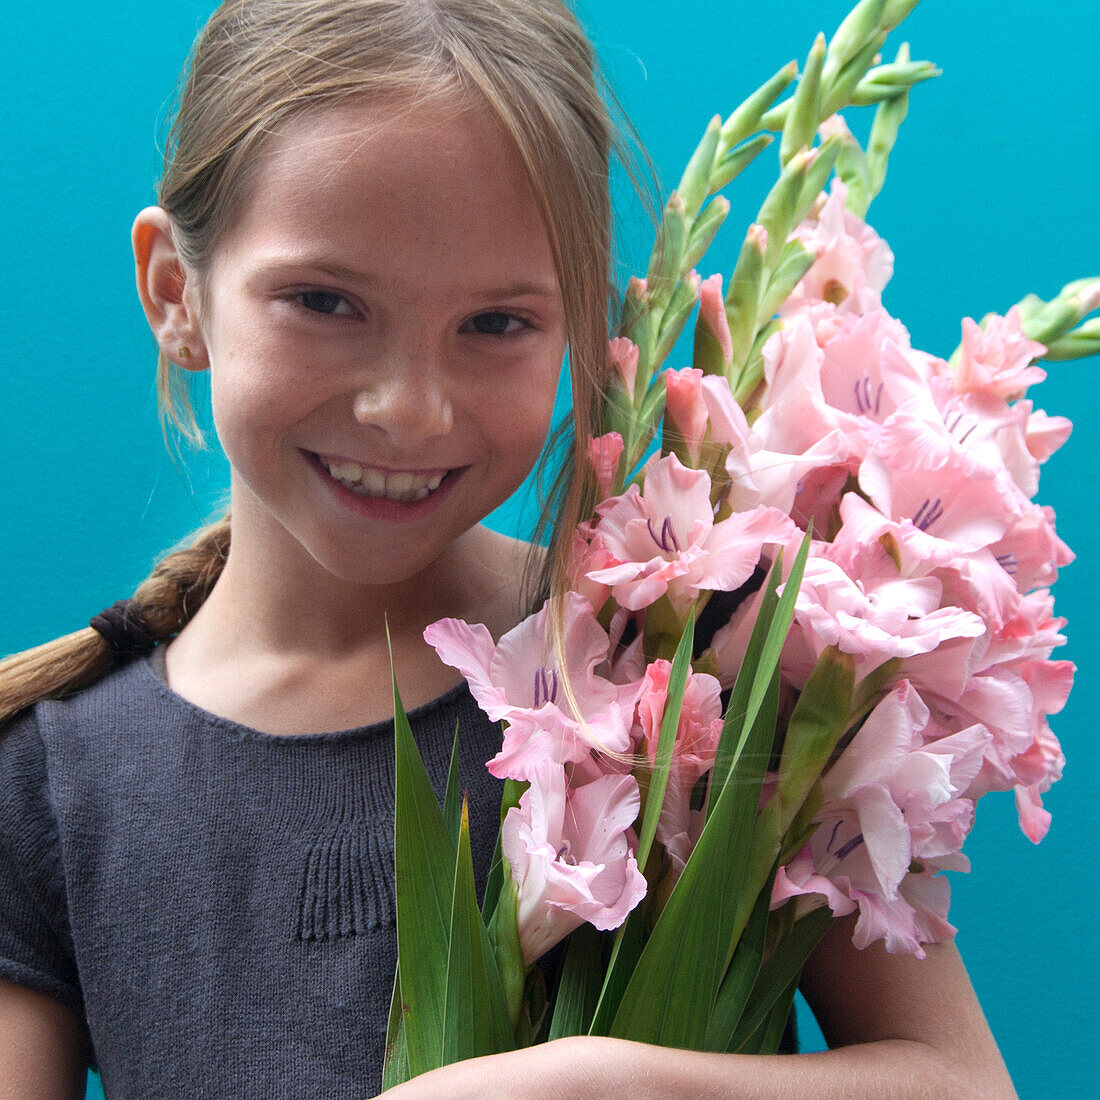 Girl holding Gladiolus